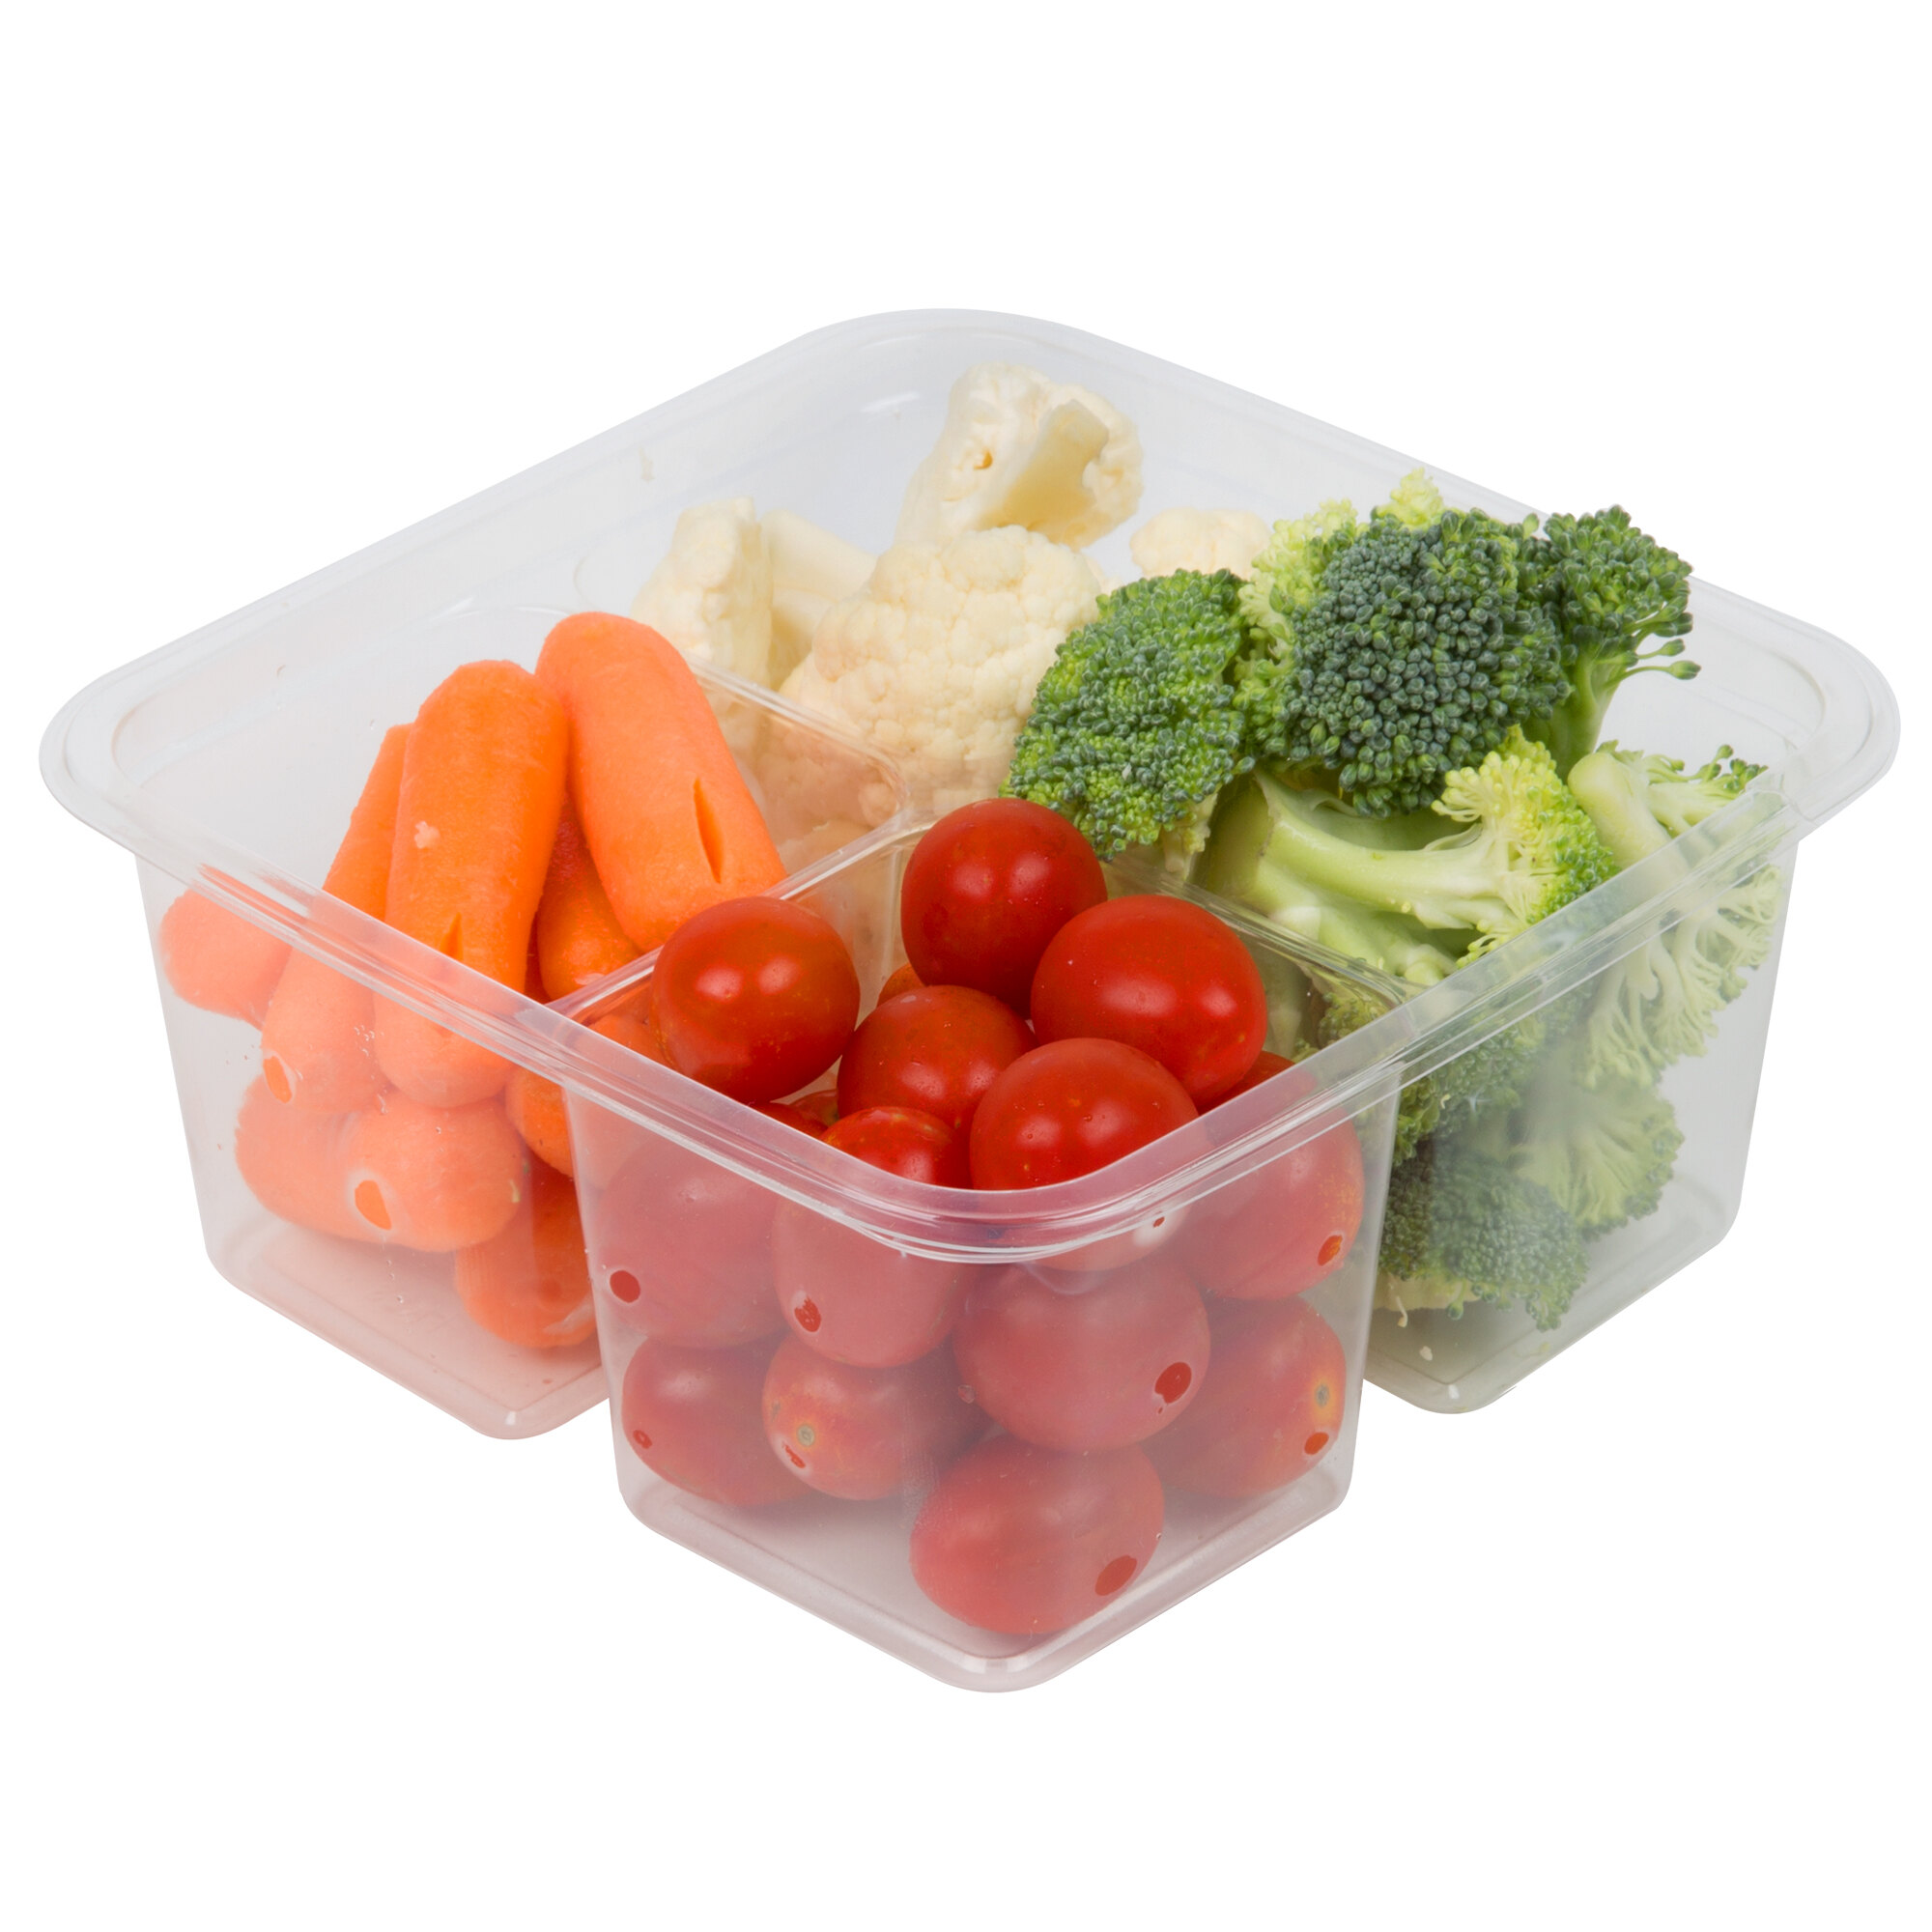 Хранение очищенных овощей. Контейнер для овощей. Лоток для овощей. Овощи и фрукты в контейнерах. Контейнер под овощи.